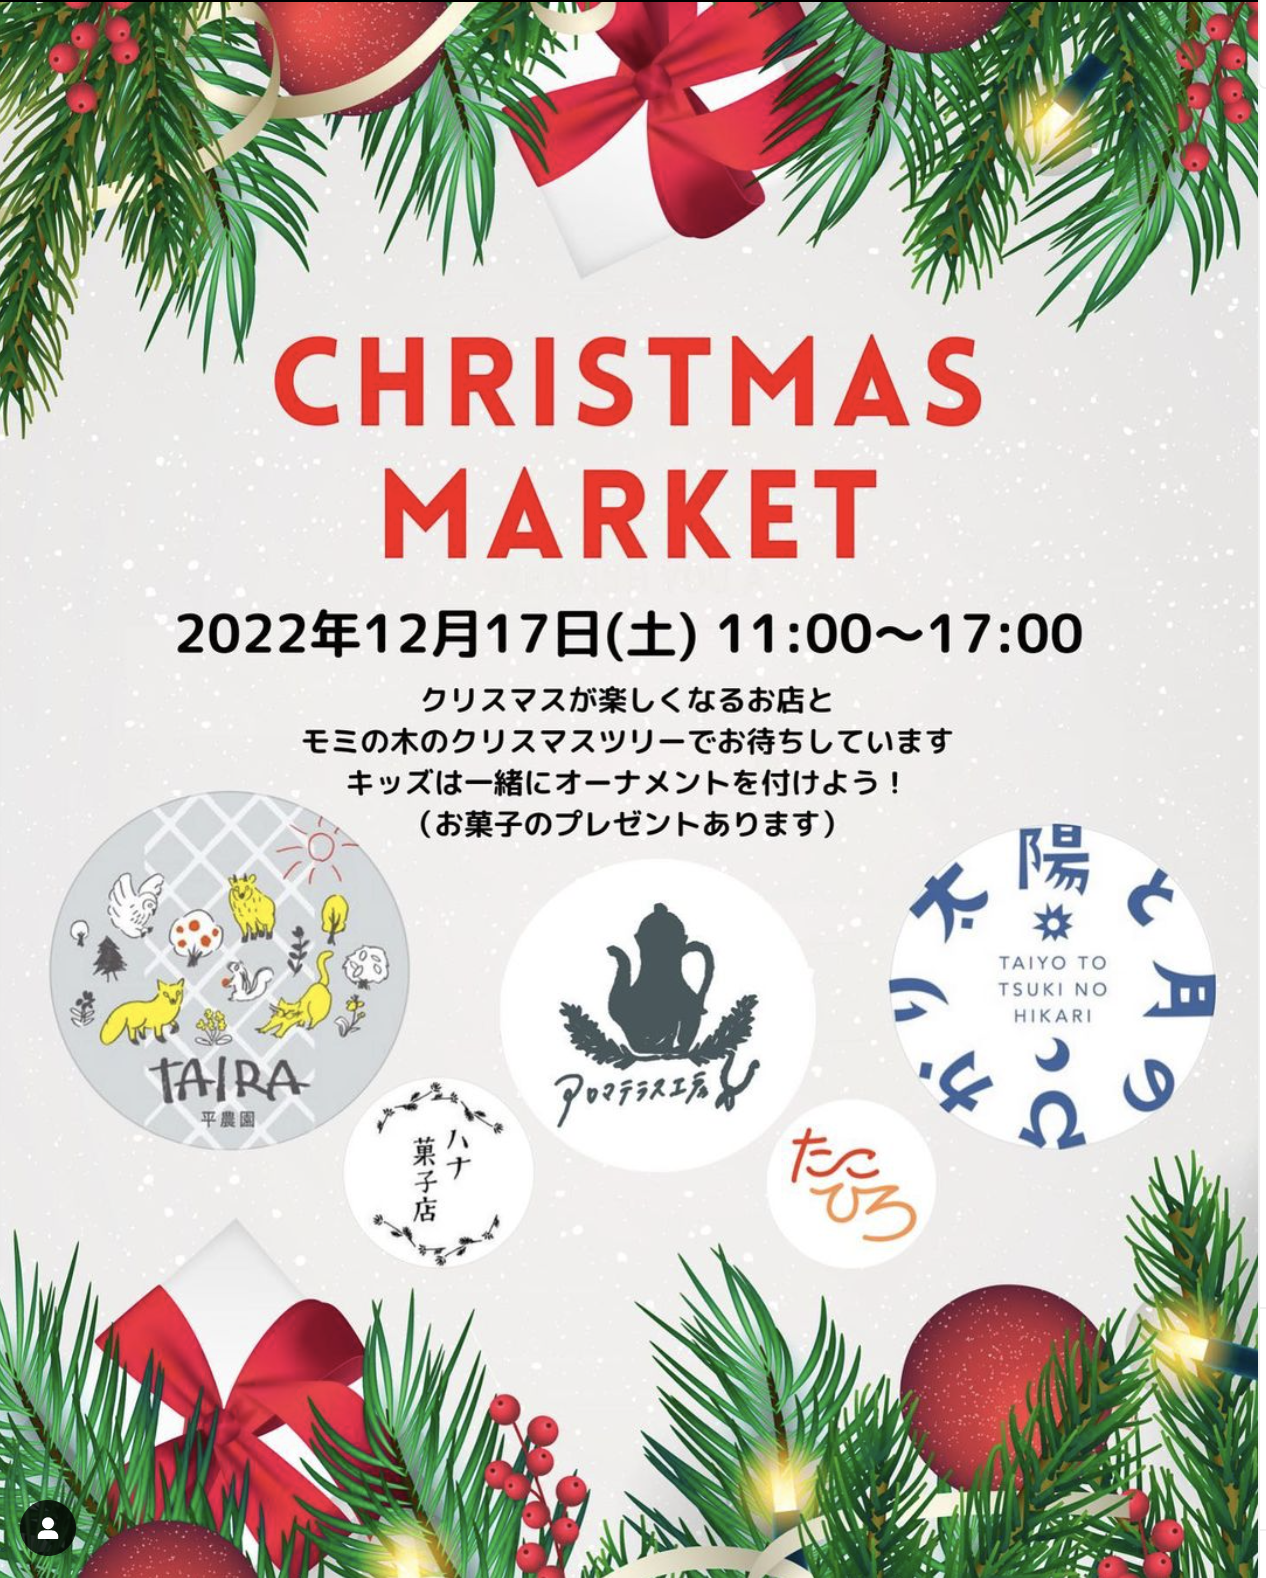 【山形イベント情報】12/17 nakamura KITCHENsでクリスマスマーケットが開催されます。(山形市鳥居ケ丘)